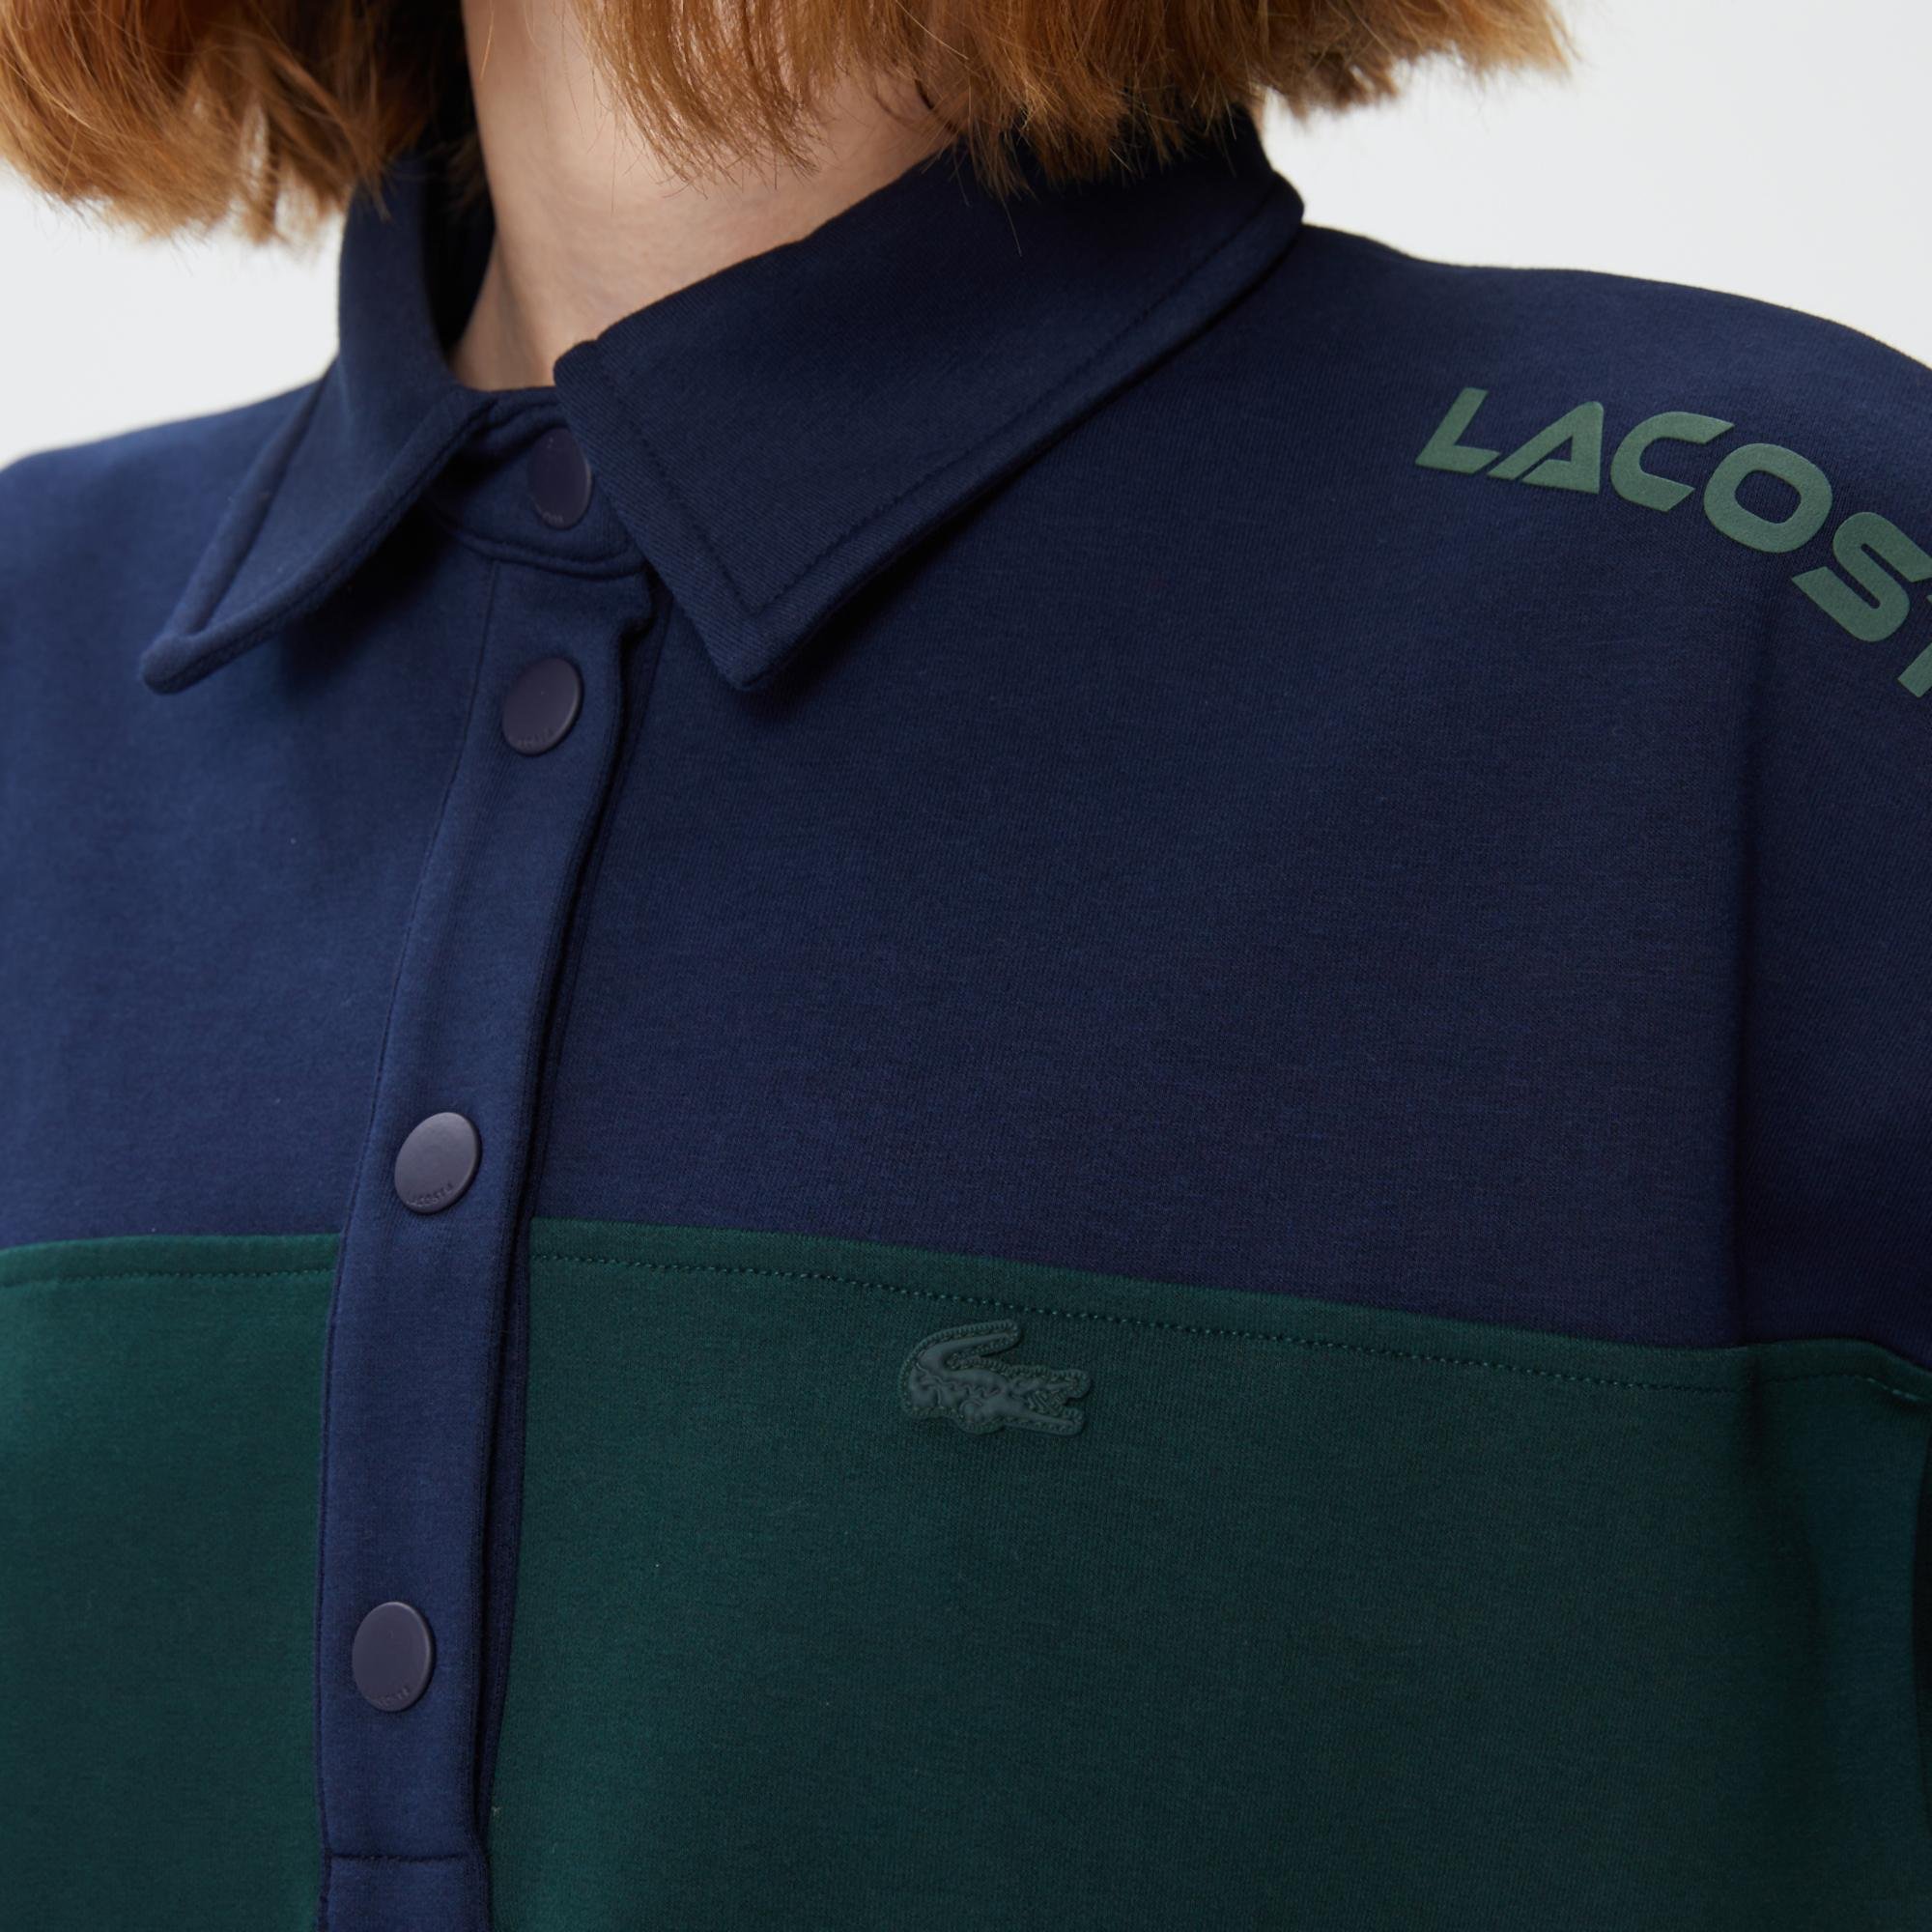 Lacoste Kadın Regular Fit Kısa Kollu Polo Yaka Renk Bloklu Yeşil Elbise